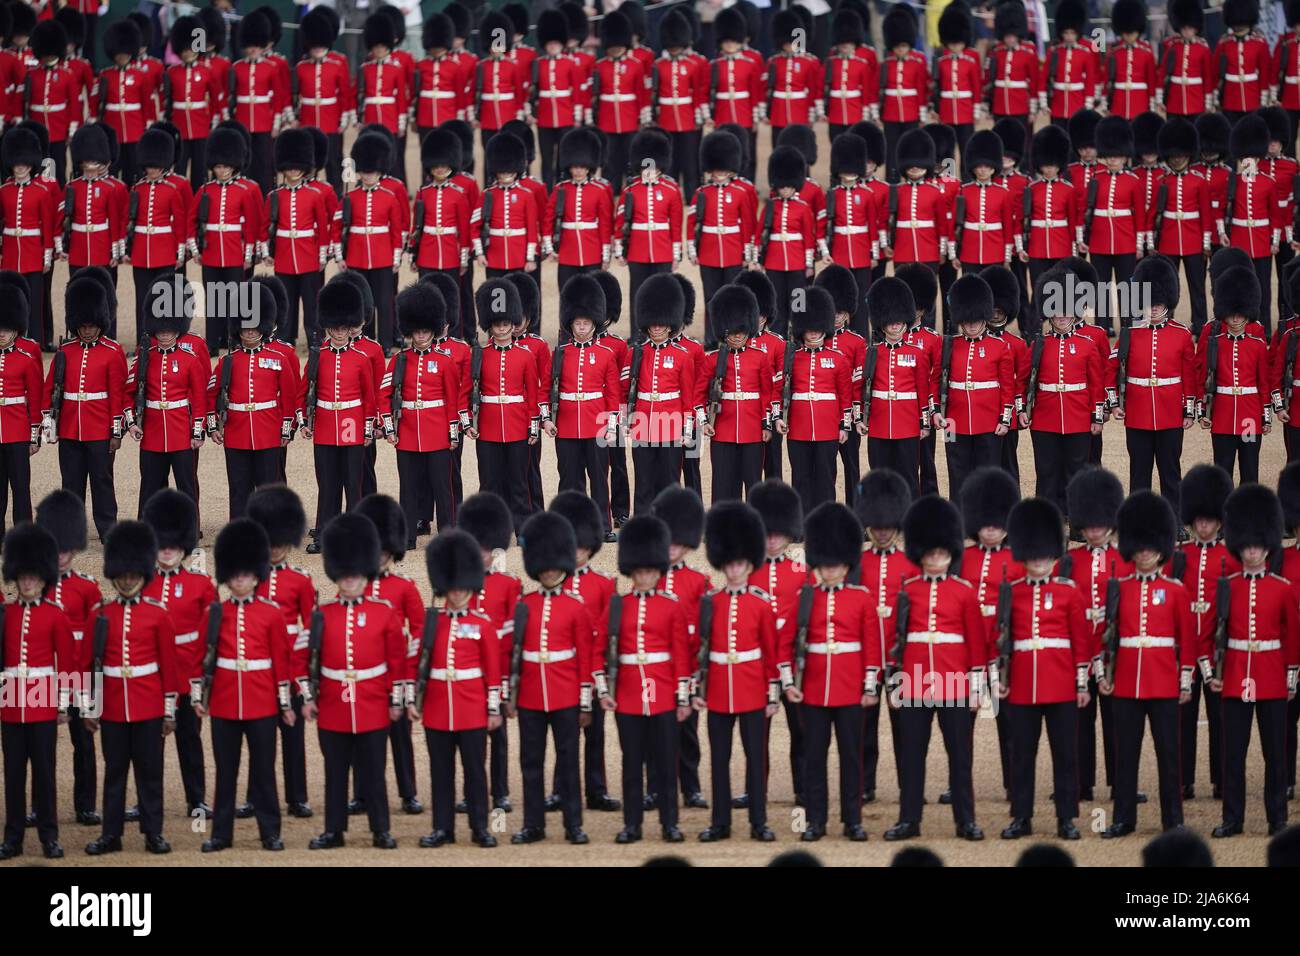 Soldatenparade während der Colonel's Review, der Abschlussprobe des Trooping the Color, der jährlichen Geburtstagsparade der Königin, bei der Horse Guards Parade in London. Bilddatum: Samstag, 28. Mai 2022. Stockfoto